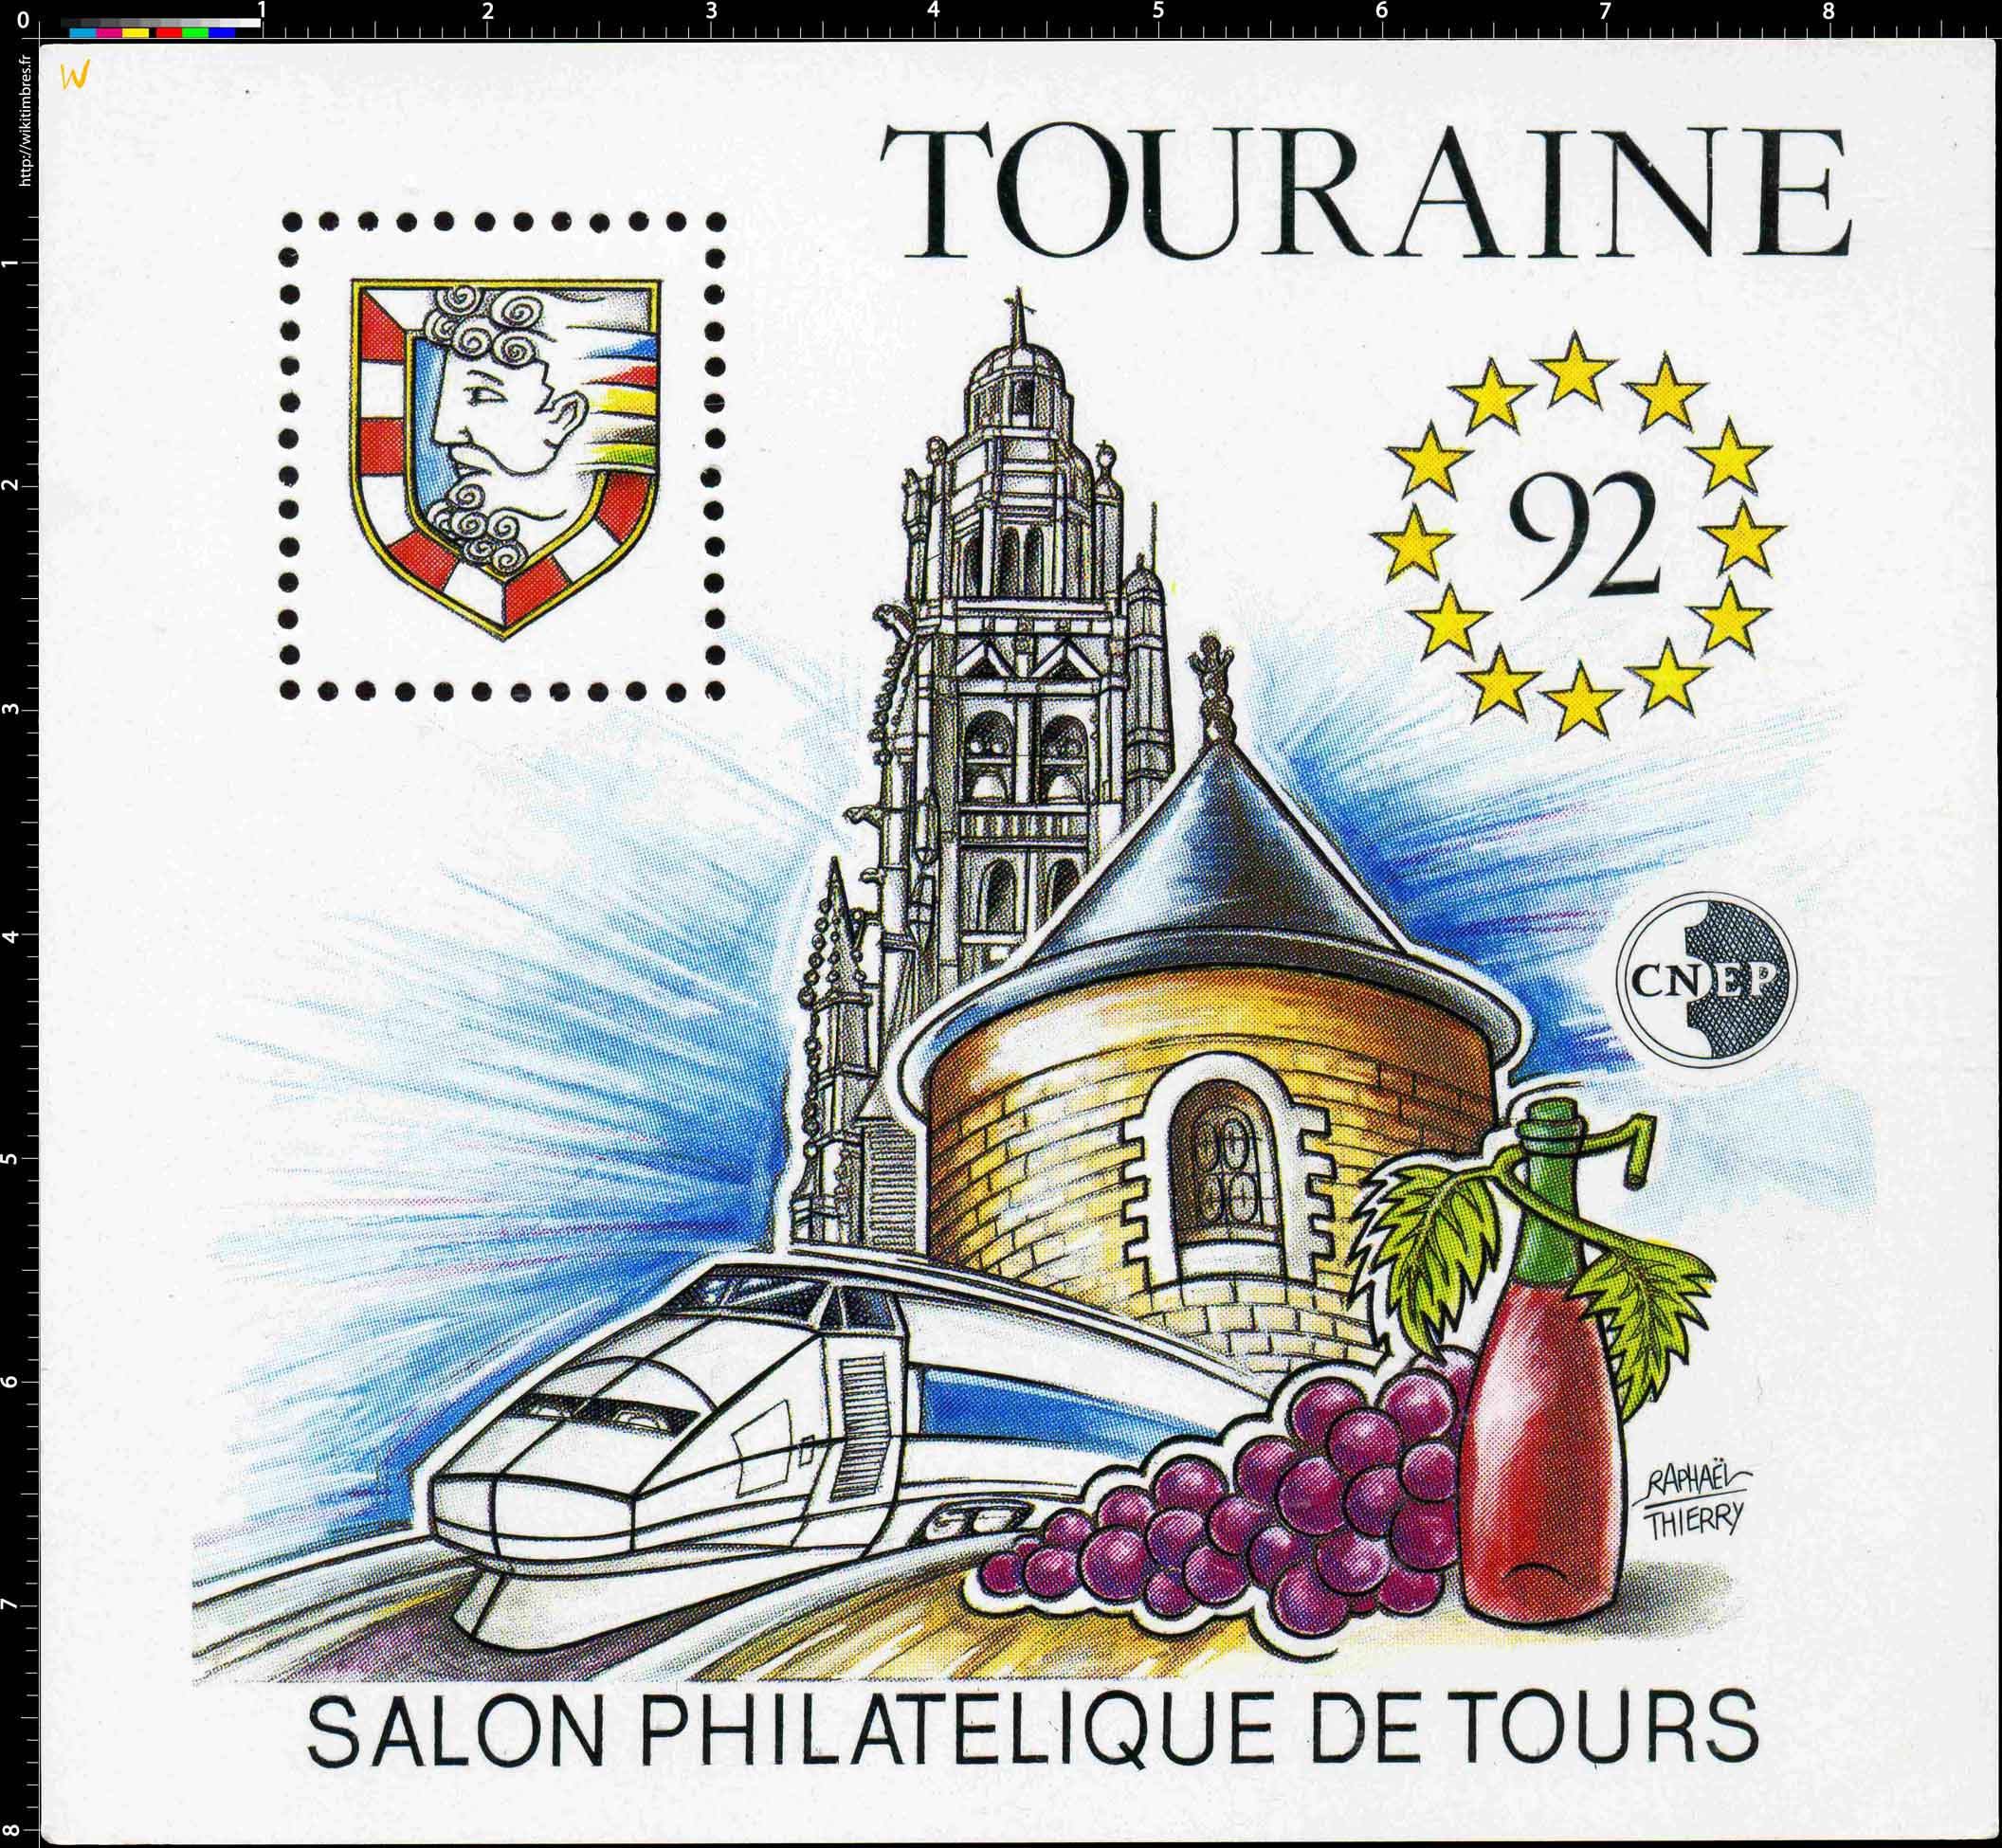 92 Touraine Salon philatélique de Tours CNEP